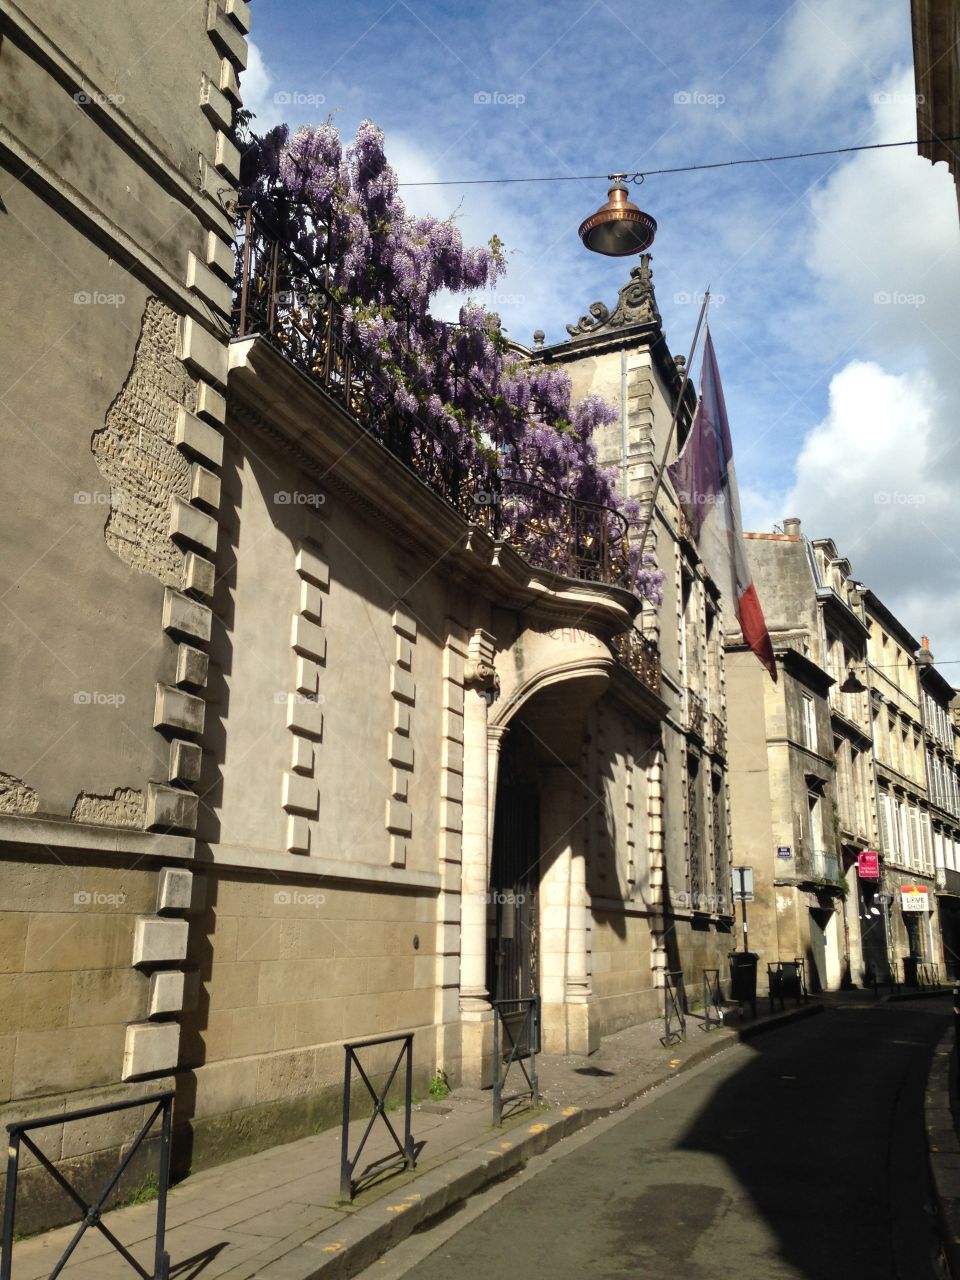 Bordeaux city archives